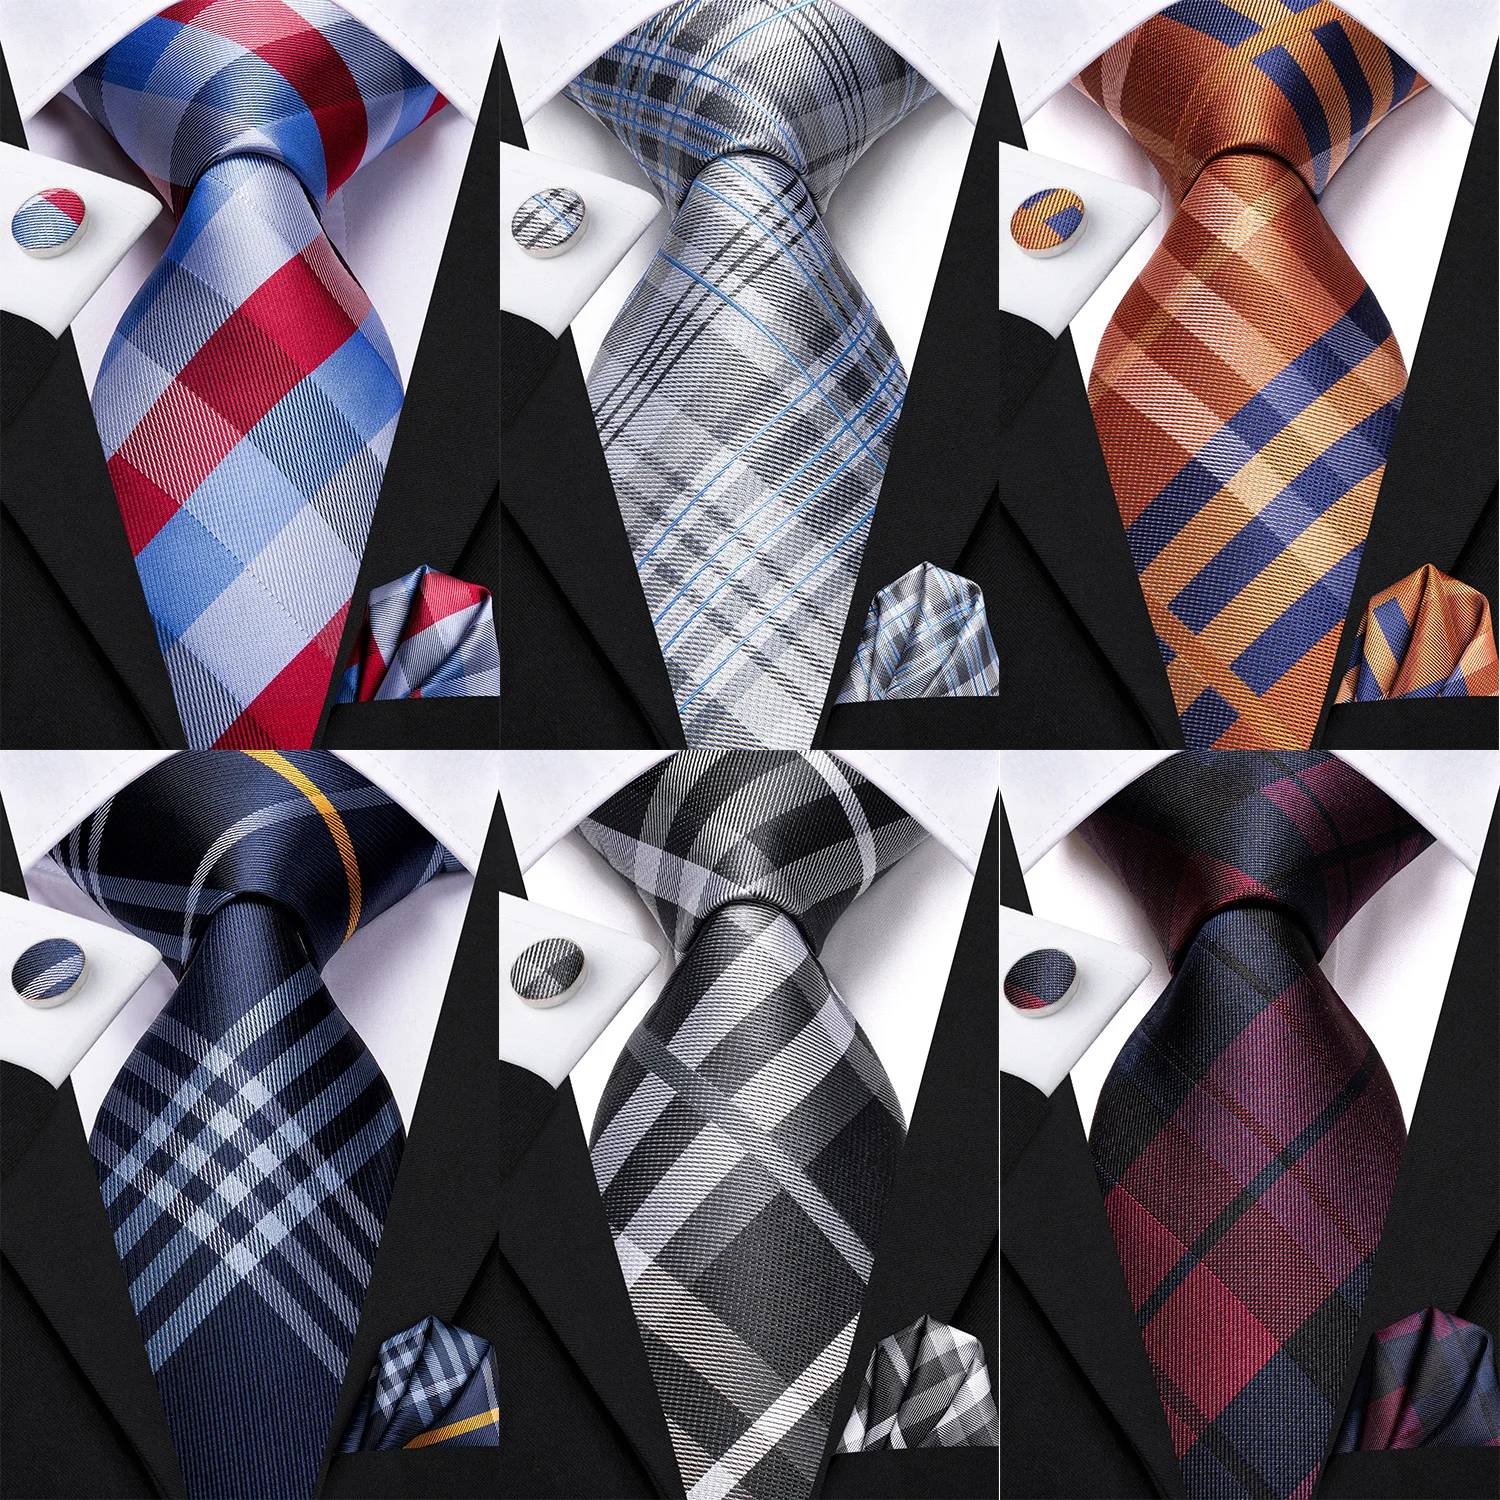 Hi-Tie Designer Silk Wedding Tie For Men Blue White Plaid Handky Cufflink Set Fashion Necktie For Men Business Party Wholesale